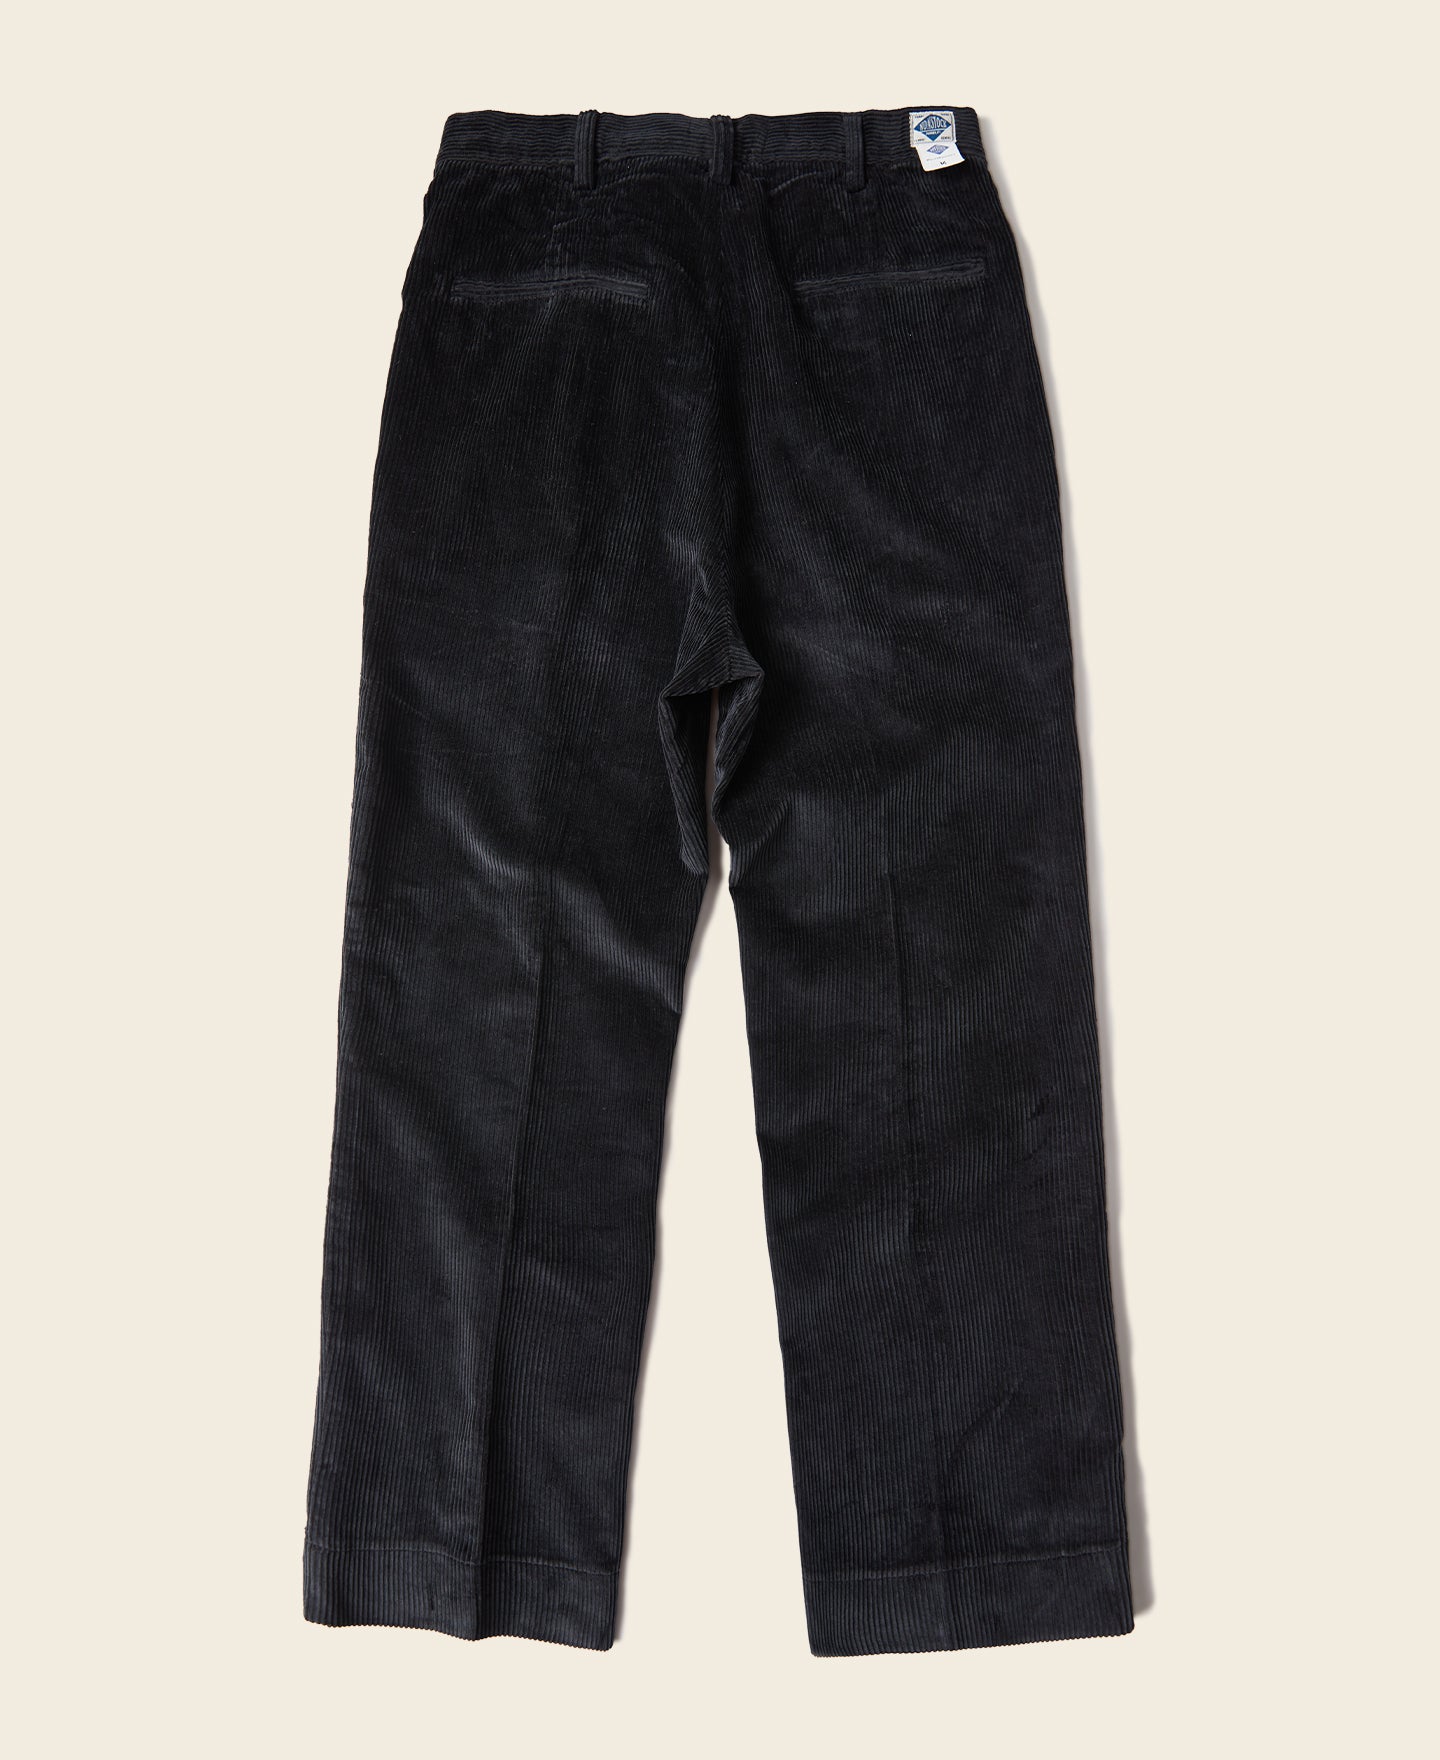 12.5 oz 8 Wale Corduroy Trousers - Black, Suit Pants Style